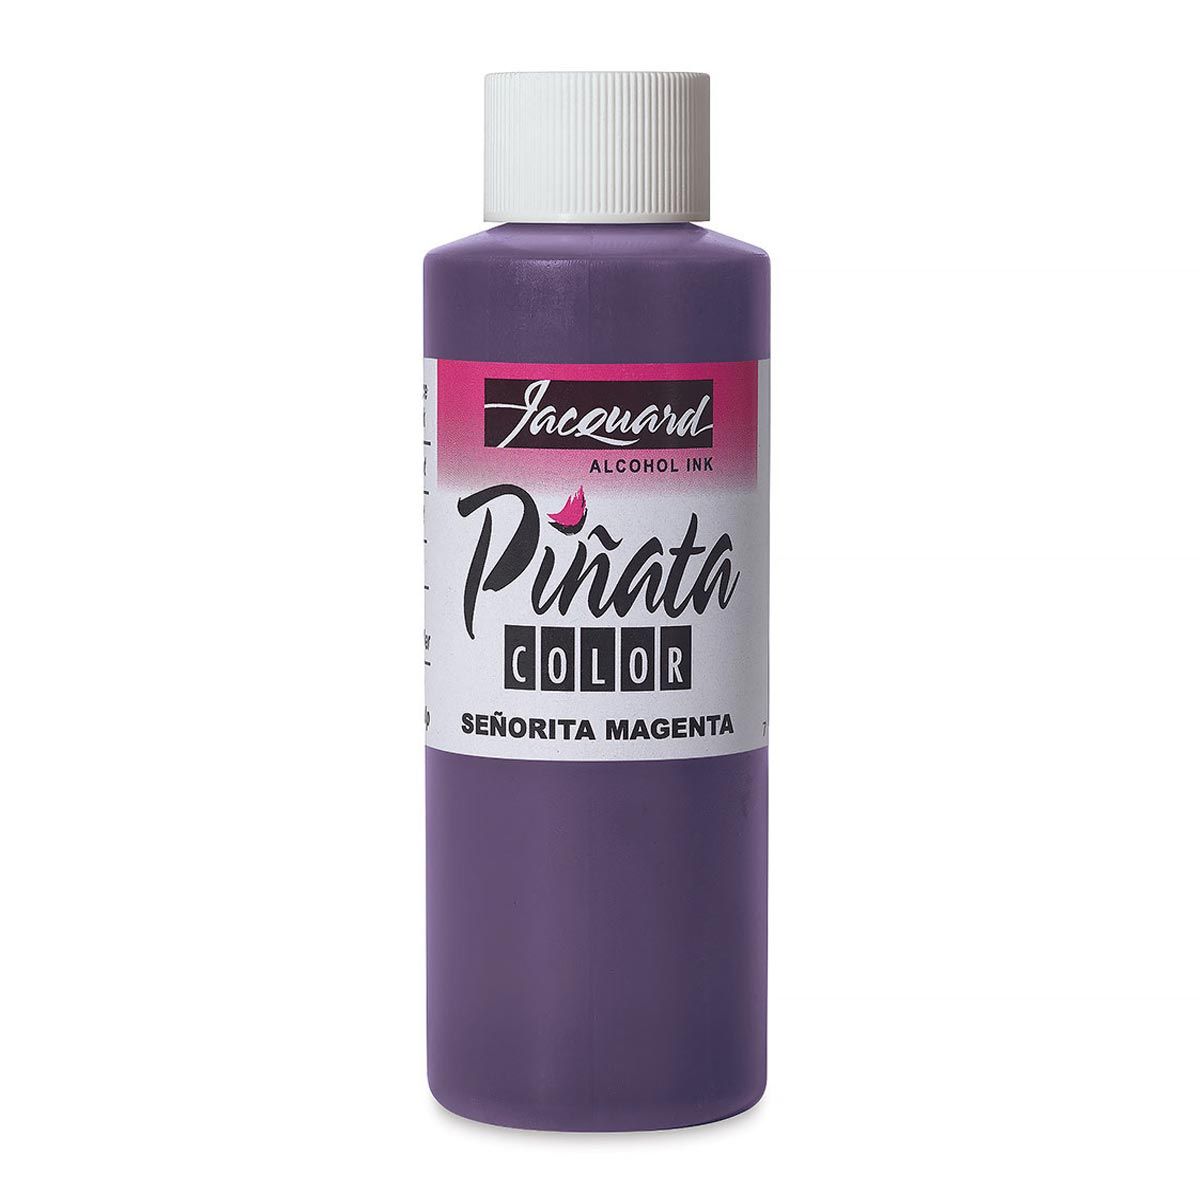 Piñata Color Alcohol Ink Senorita Magenta 4 oz